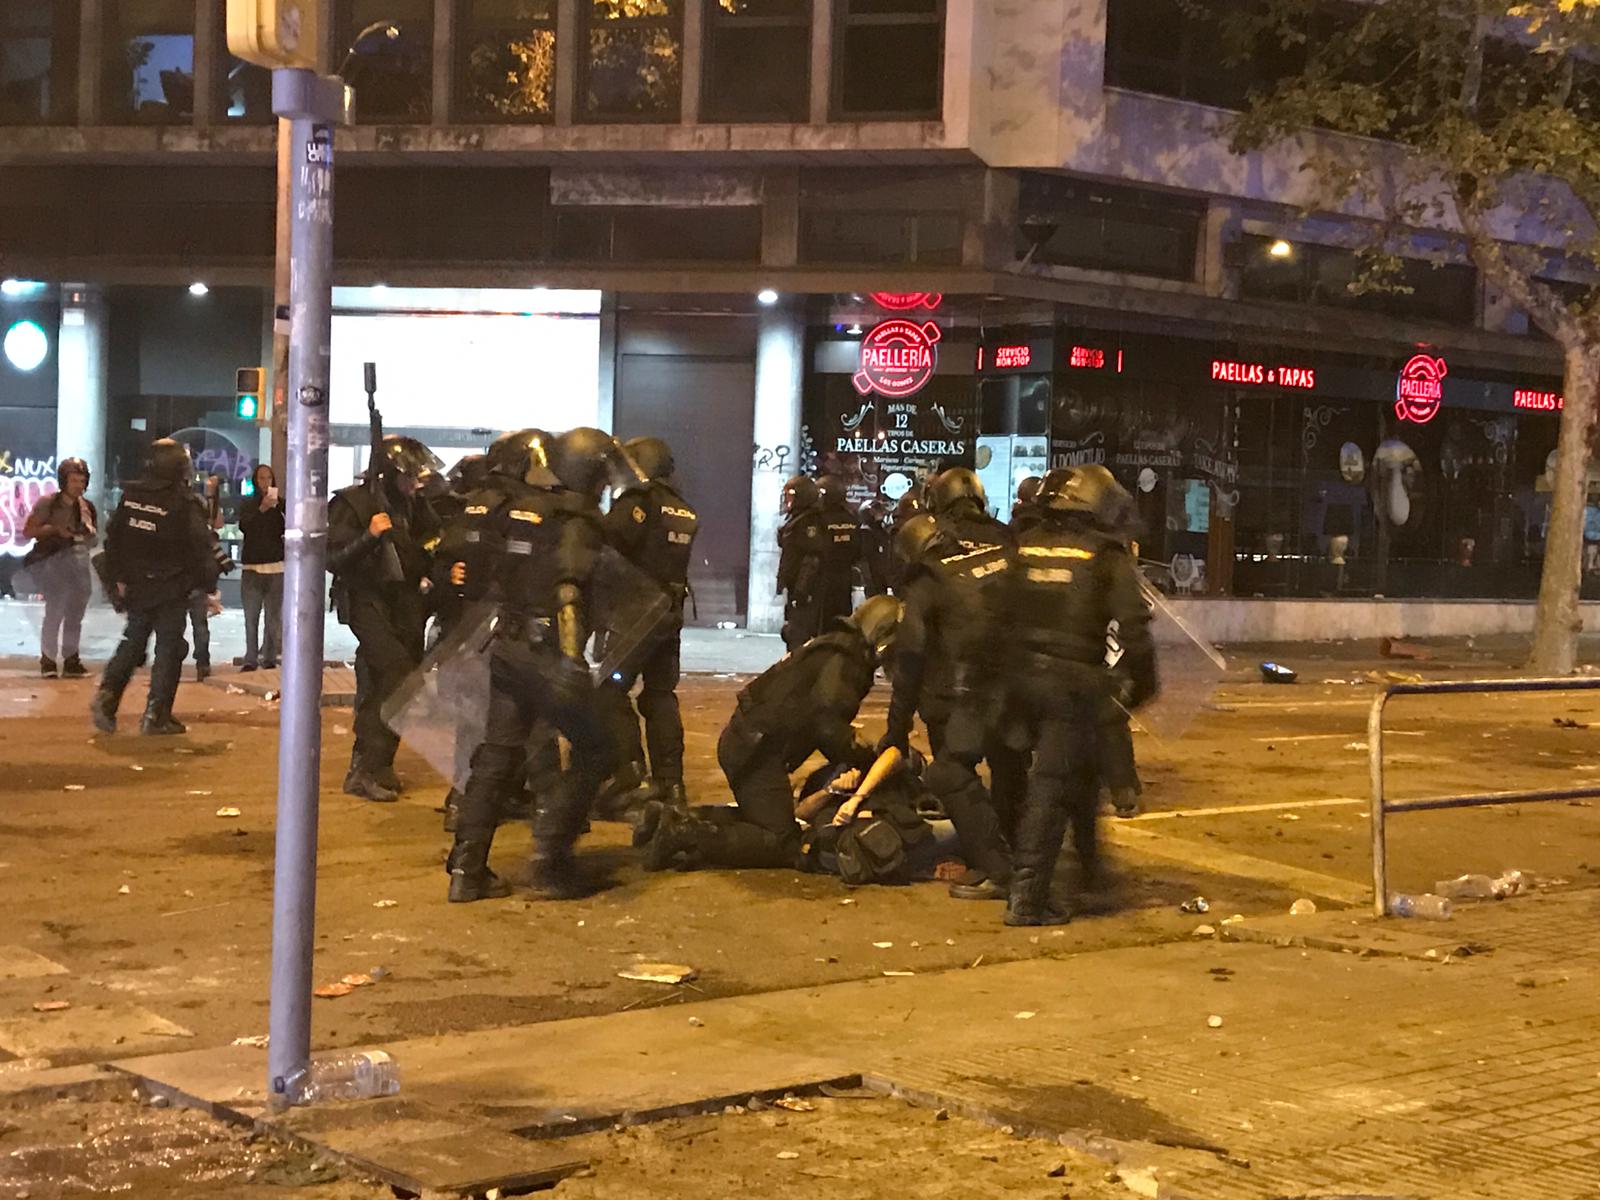 La policía española detiene a un fotoperiodista acreditado en Barcelona